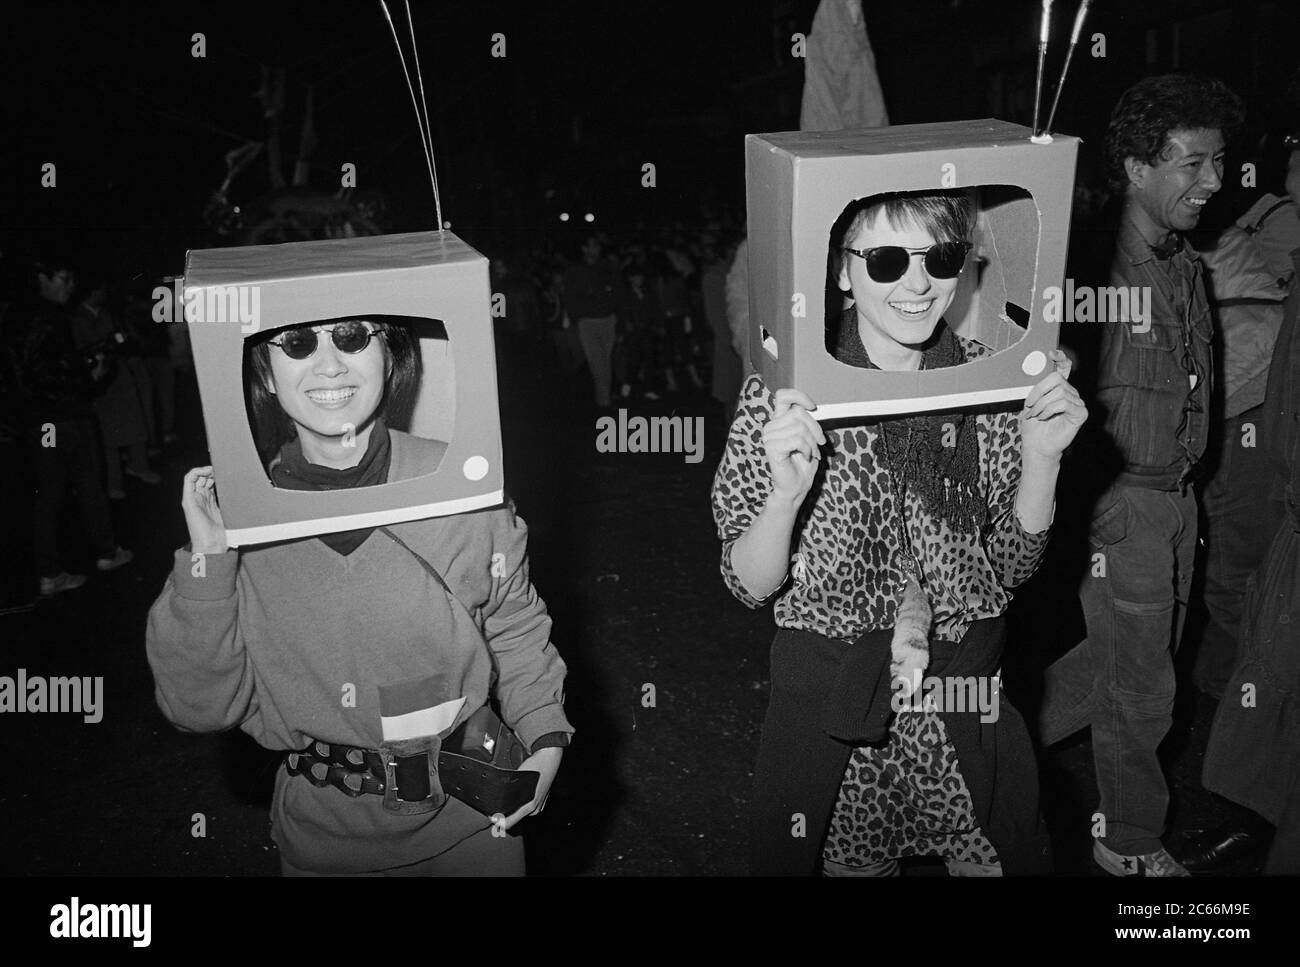 La TV si dirige alla Greenwich Village Halloween Parade, New York City, USA negli anni '80 fotografata con film in bianco e nero di notte. Foto Stock